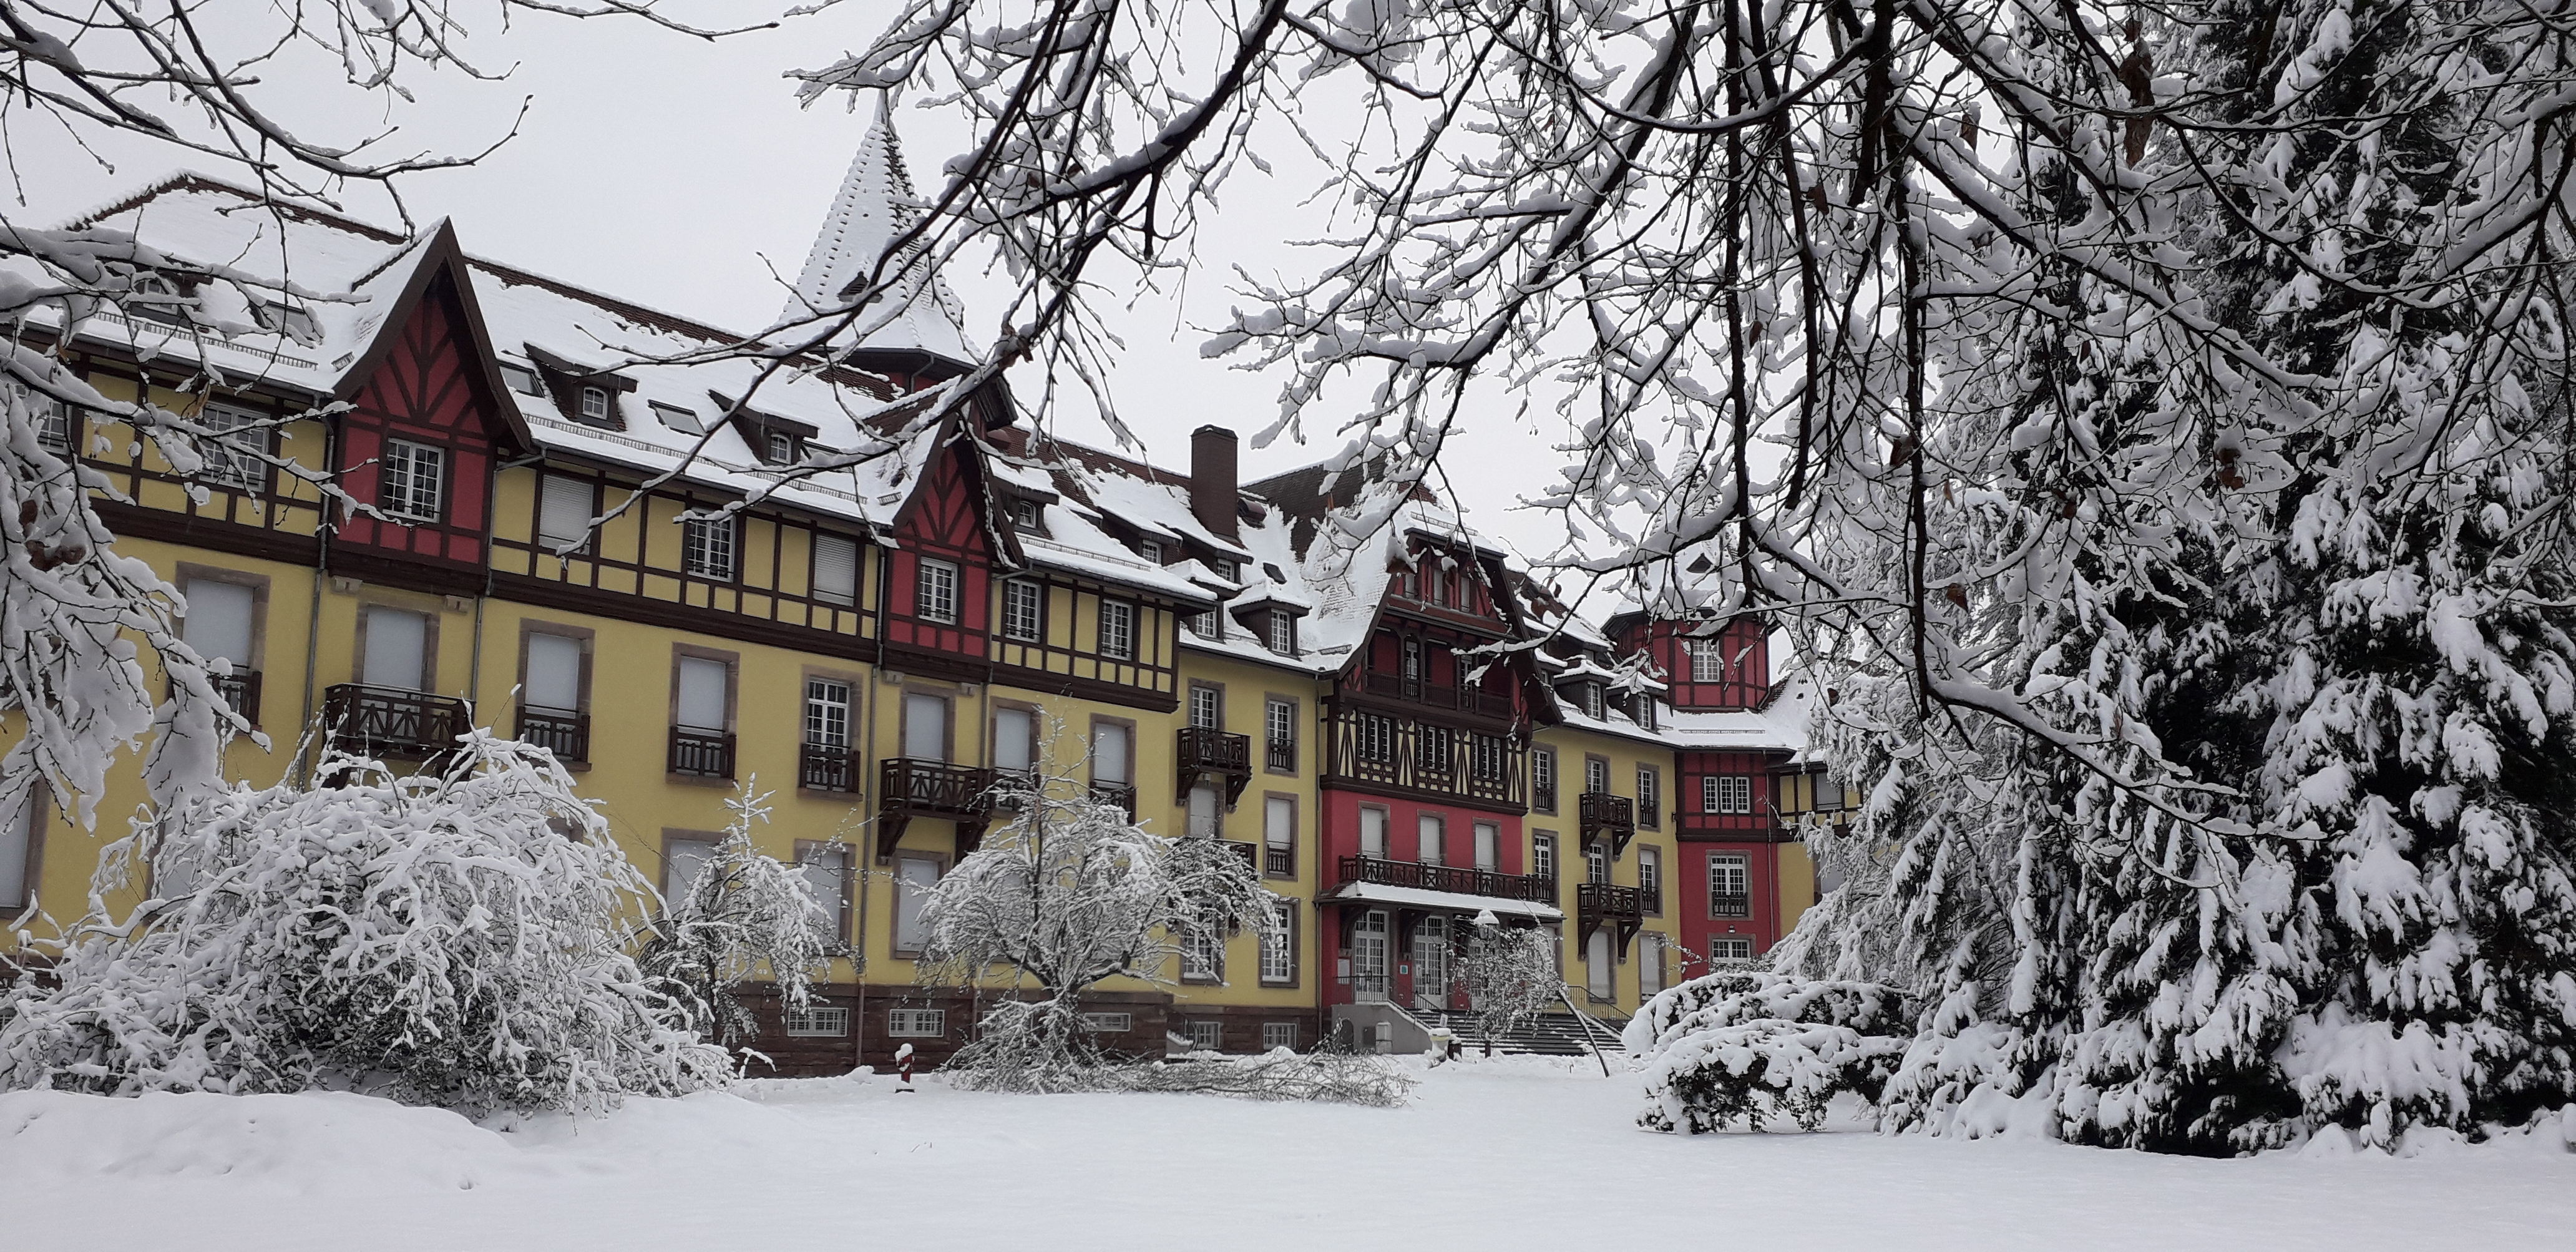 Sonnenberg sous la neige - Photo Véronique LIDIN